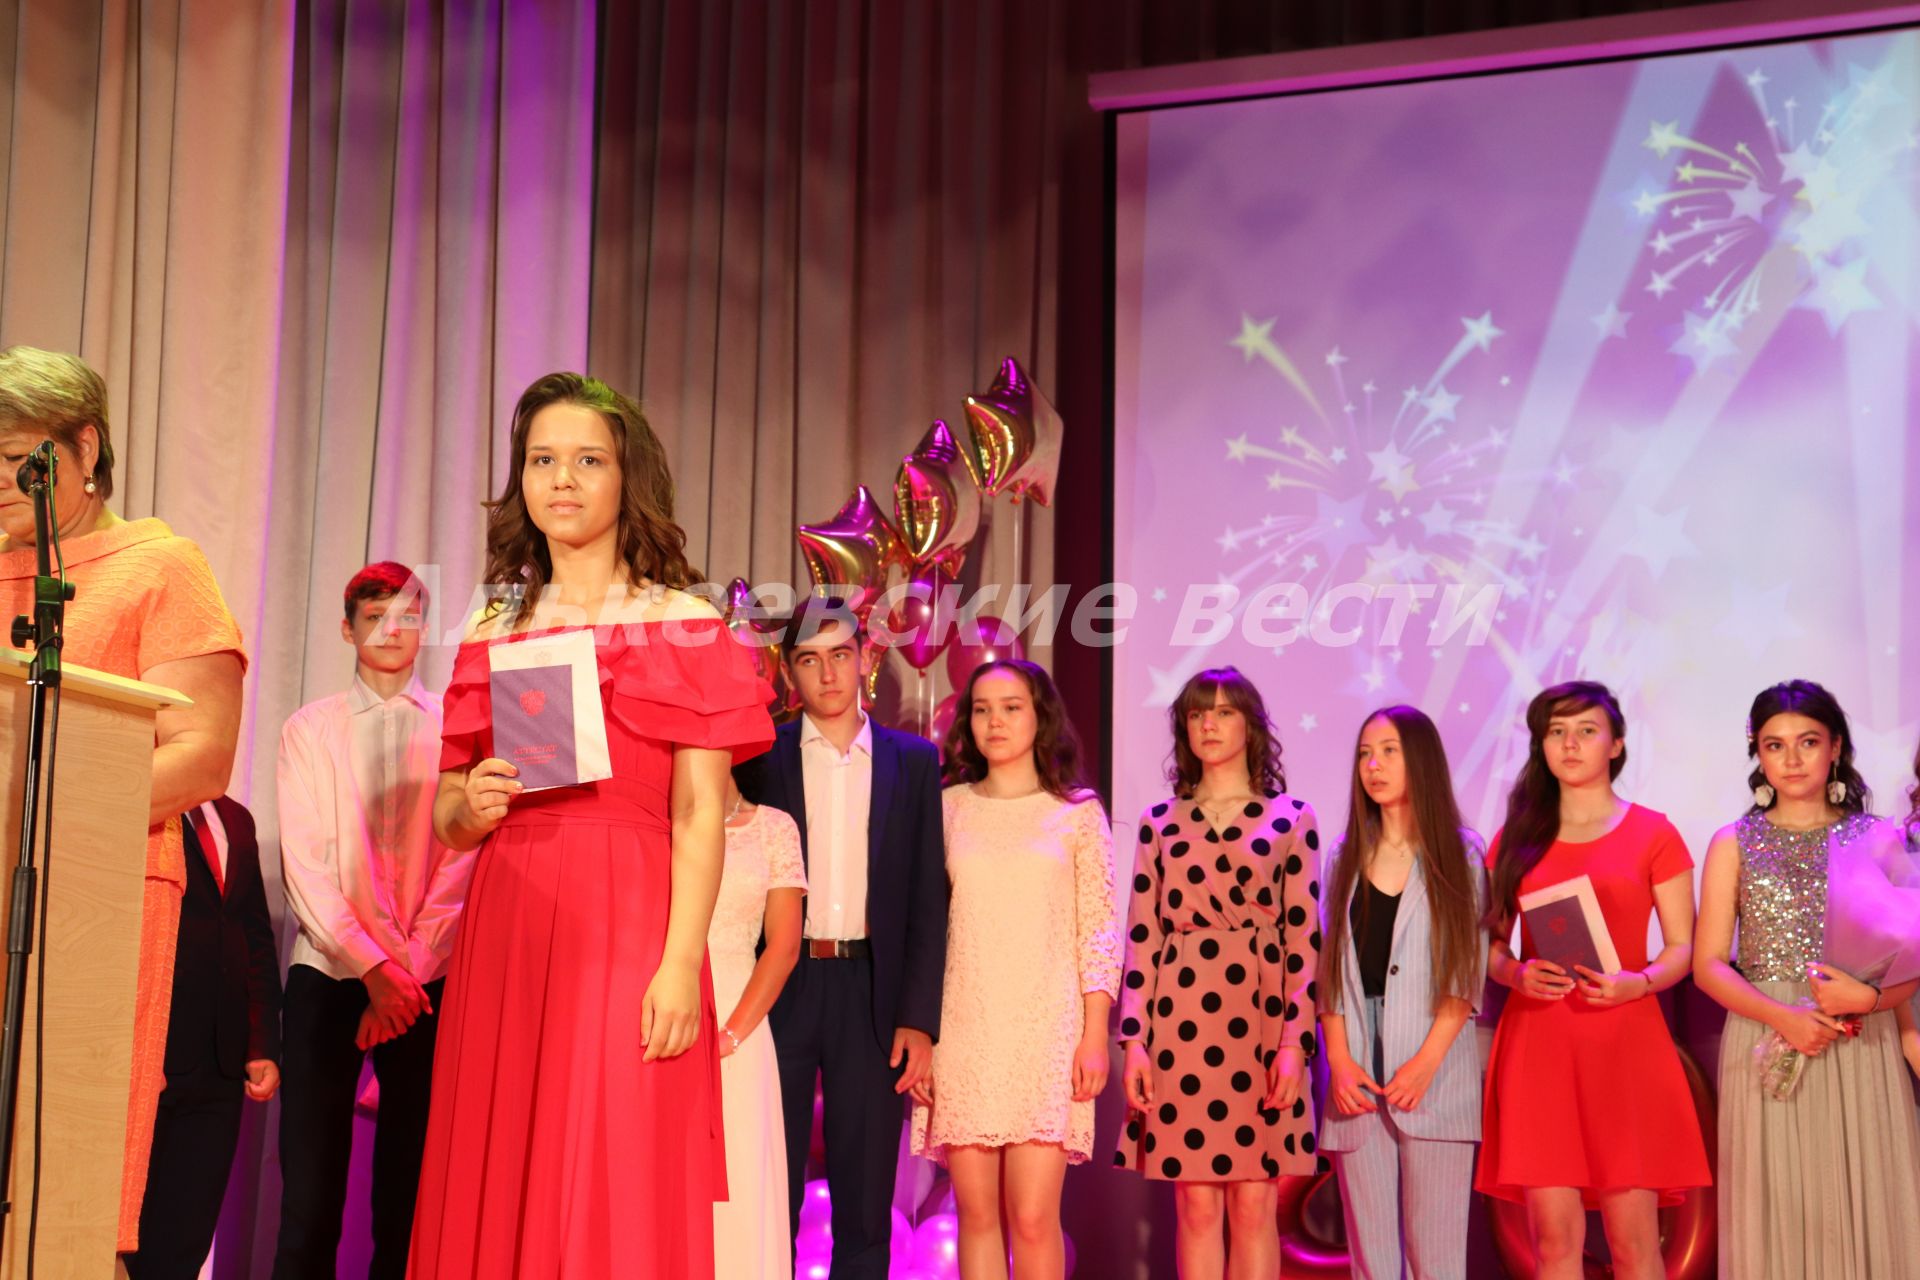 Вручение аттестатов 9-классникам Базарно-Матакской средней школы Алькеевского района